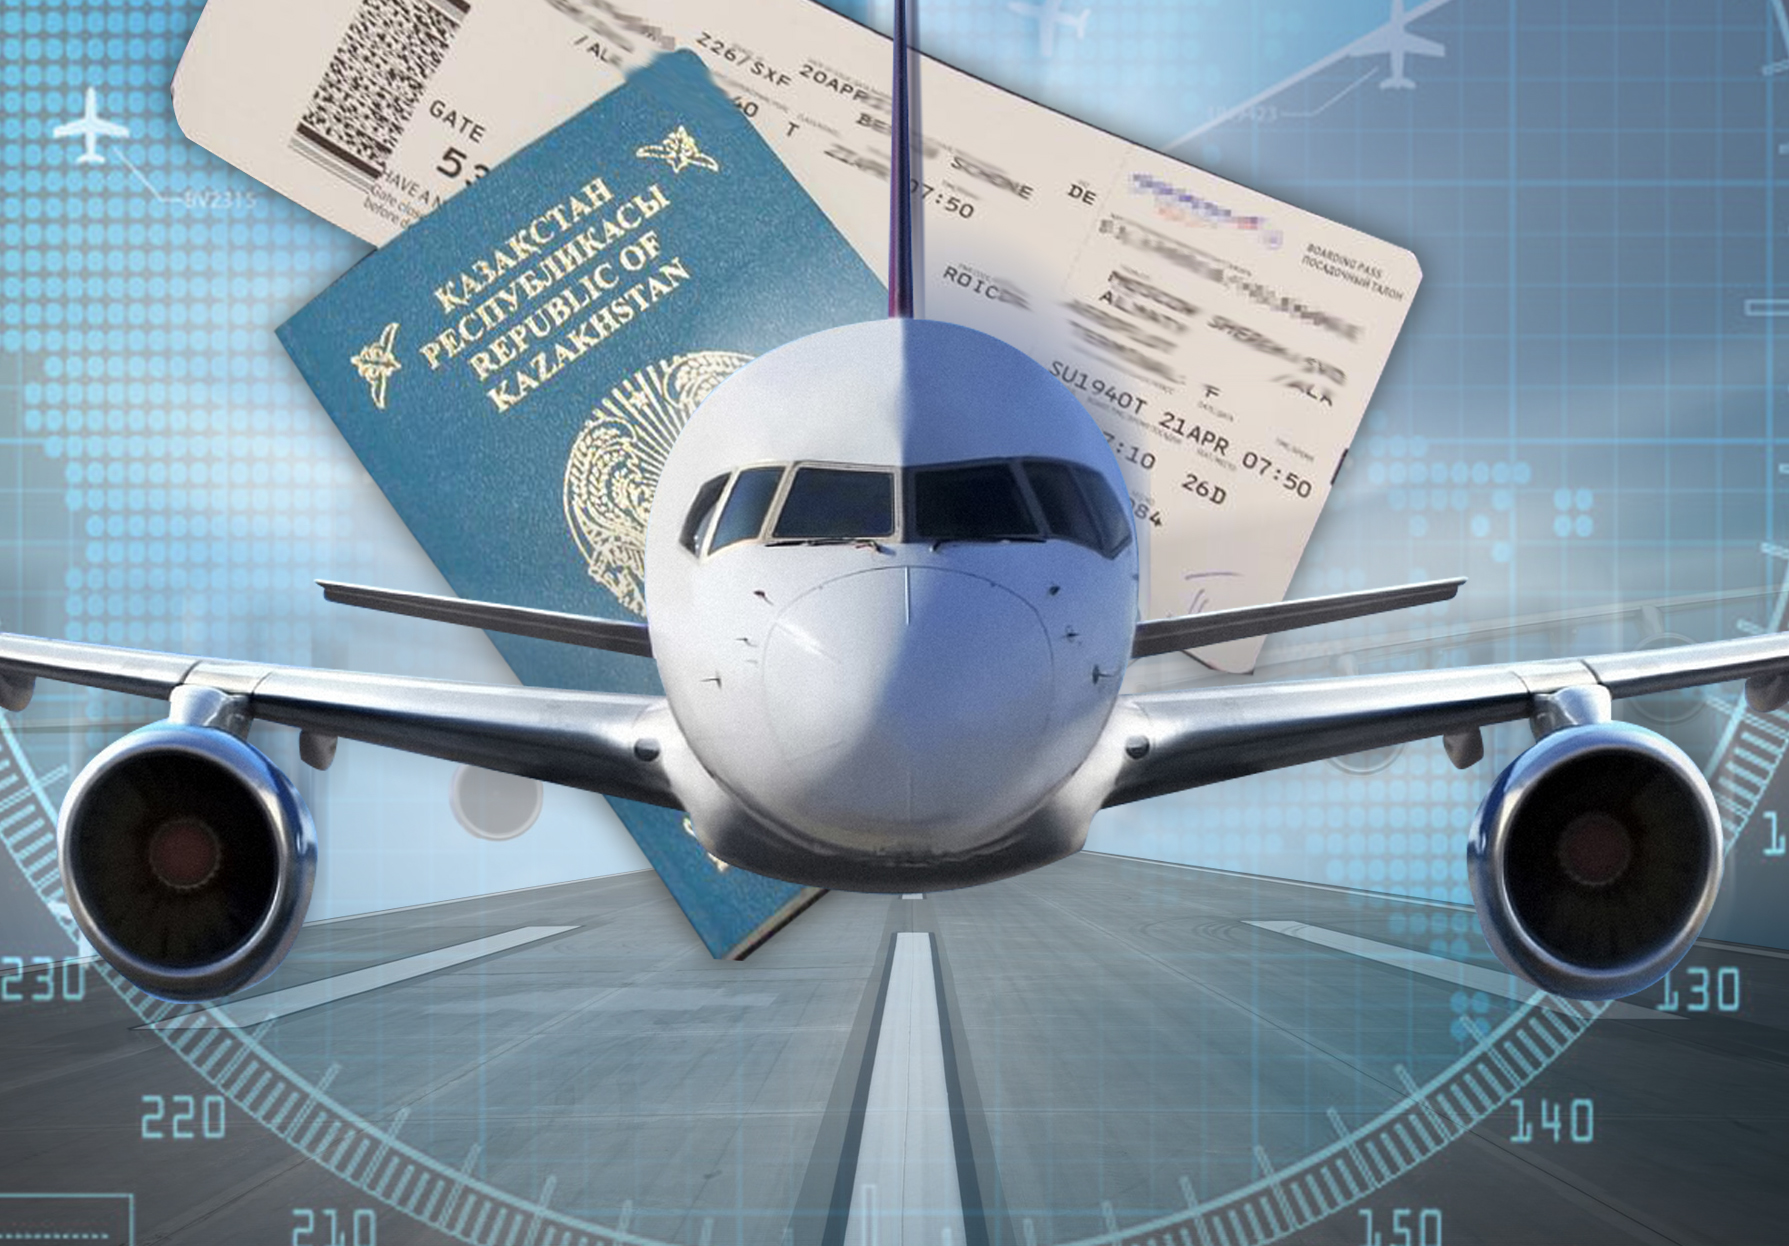 Қымбат билеттен әуе хабына дейін: Азаматтық авиация проблемалары қалай шешіледі?